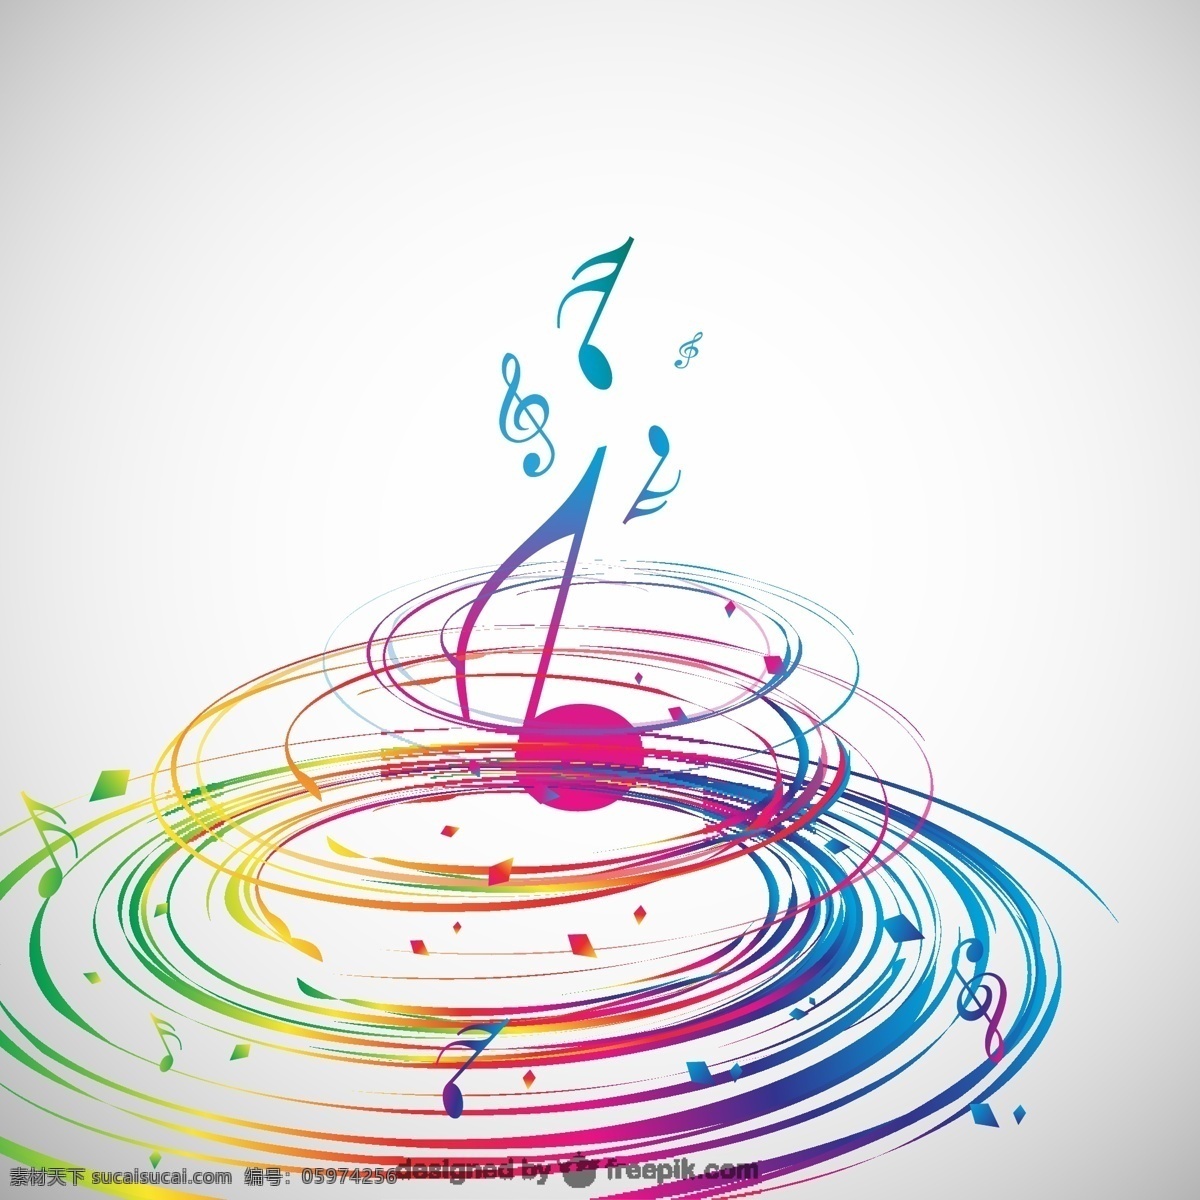 中间 彩色 螺旋 一个 音符 背景 音乐 抽象 模板 艺术 理性 壁纸 图形 涡流 布局 平面设计 抽象的图案 白色的背景 音乐的音符 音符元素 象形文字